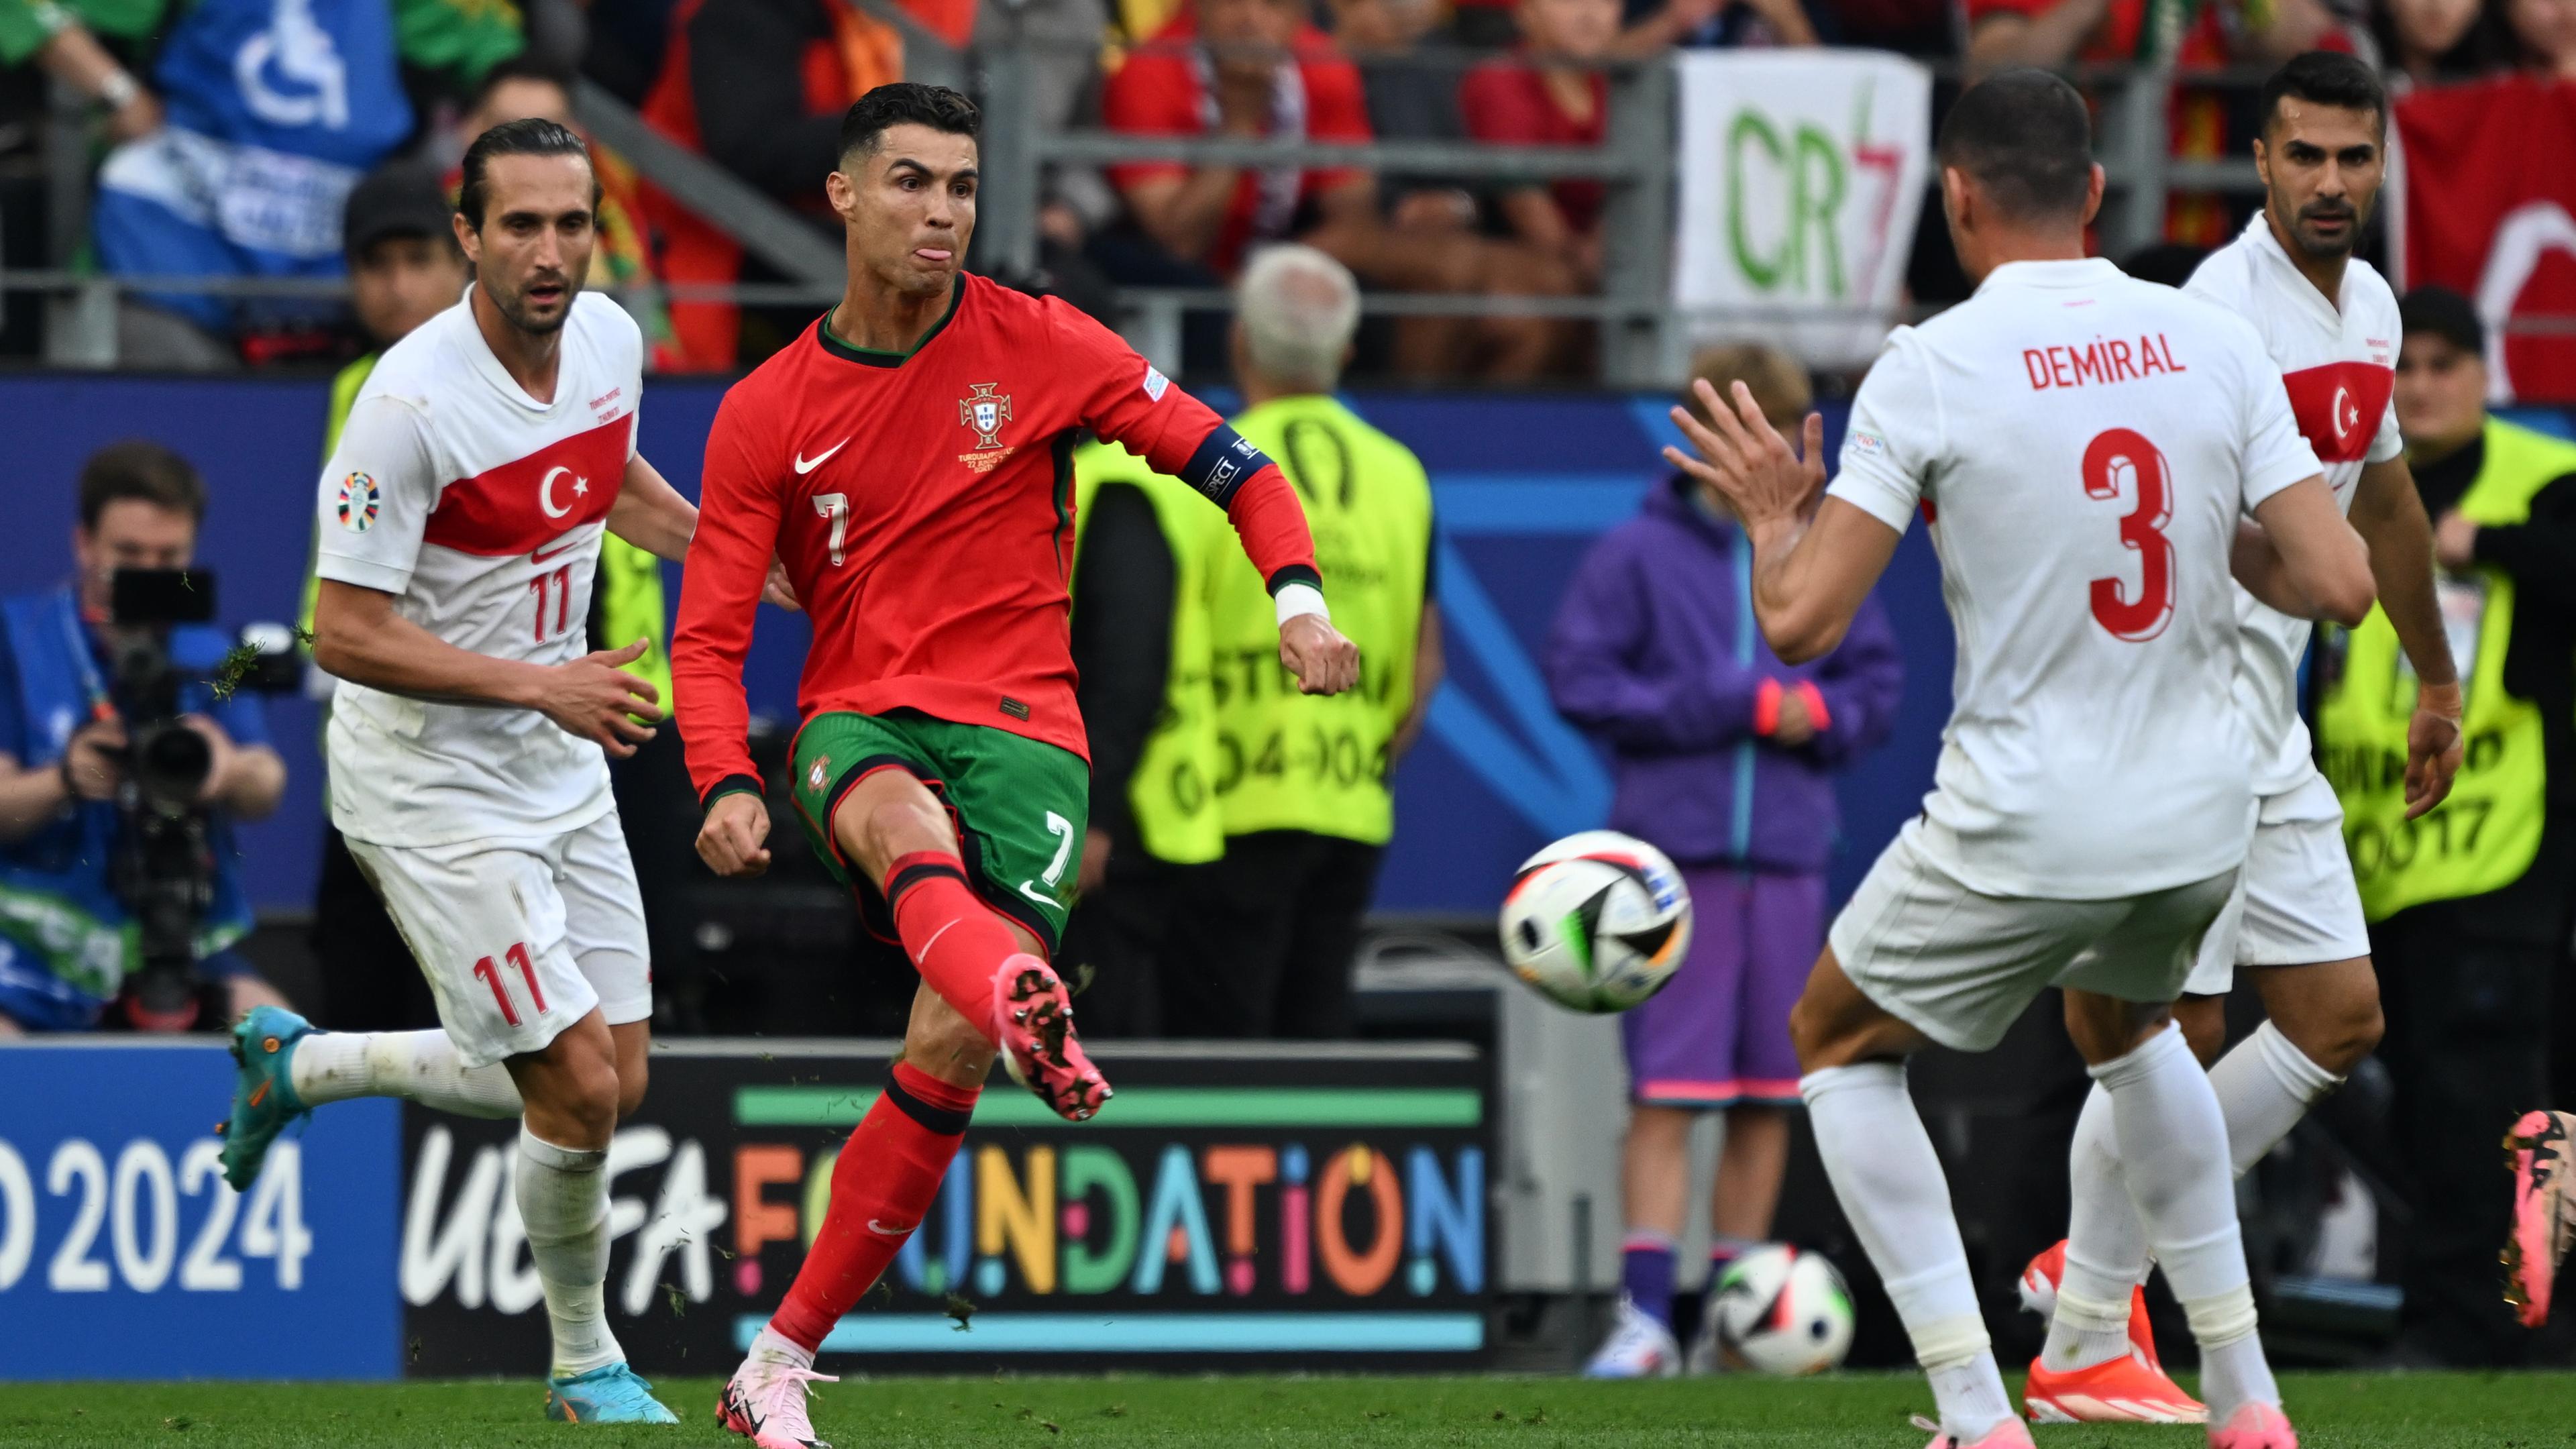 Fußball-EM 2024: Portugals Cristiano Ronaldo (M) in Aktion gegen Yusuf Yazici und Merih Demiral (r) von der Türkei.